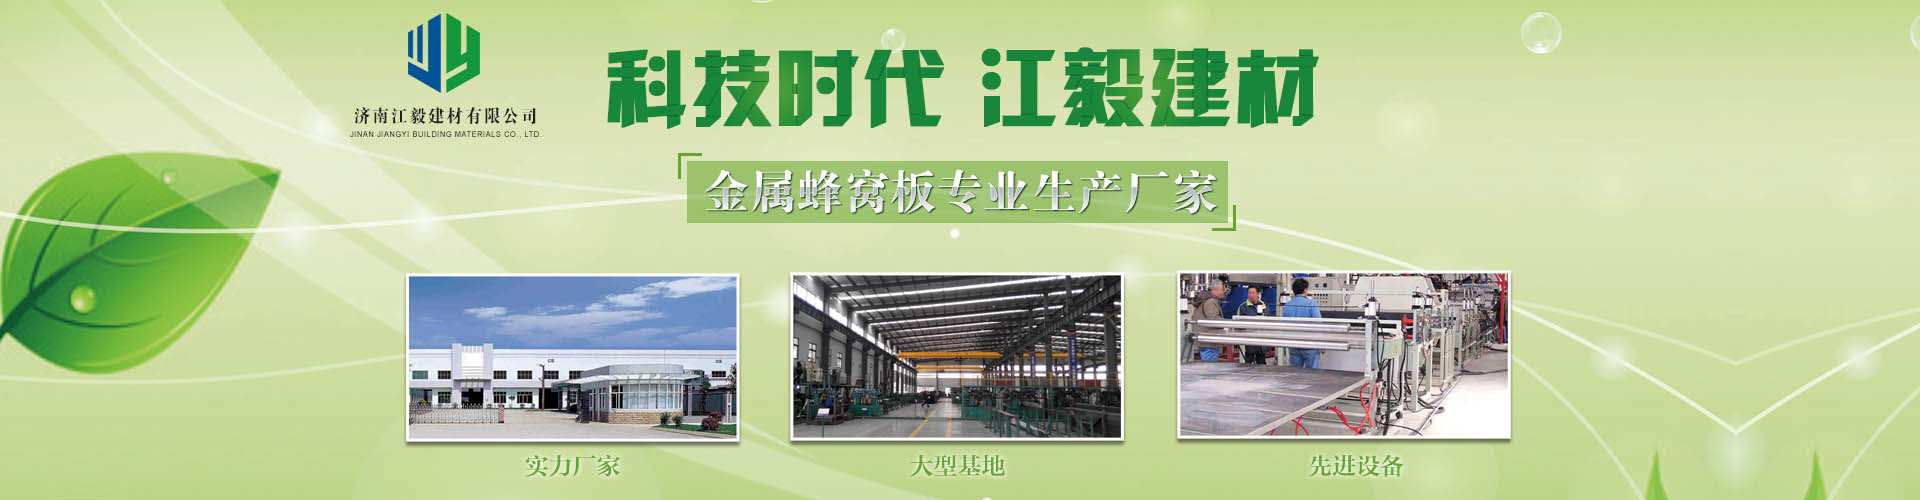 建材板材行业企业网站banner